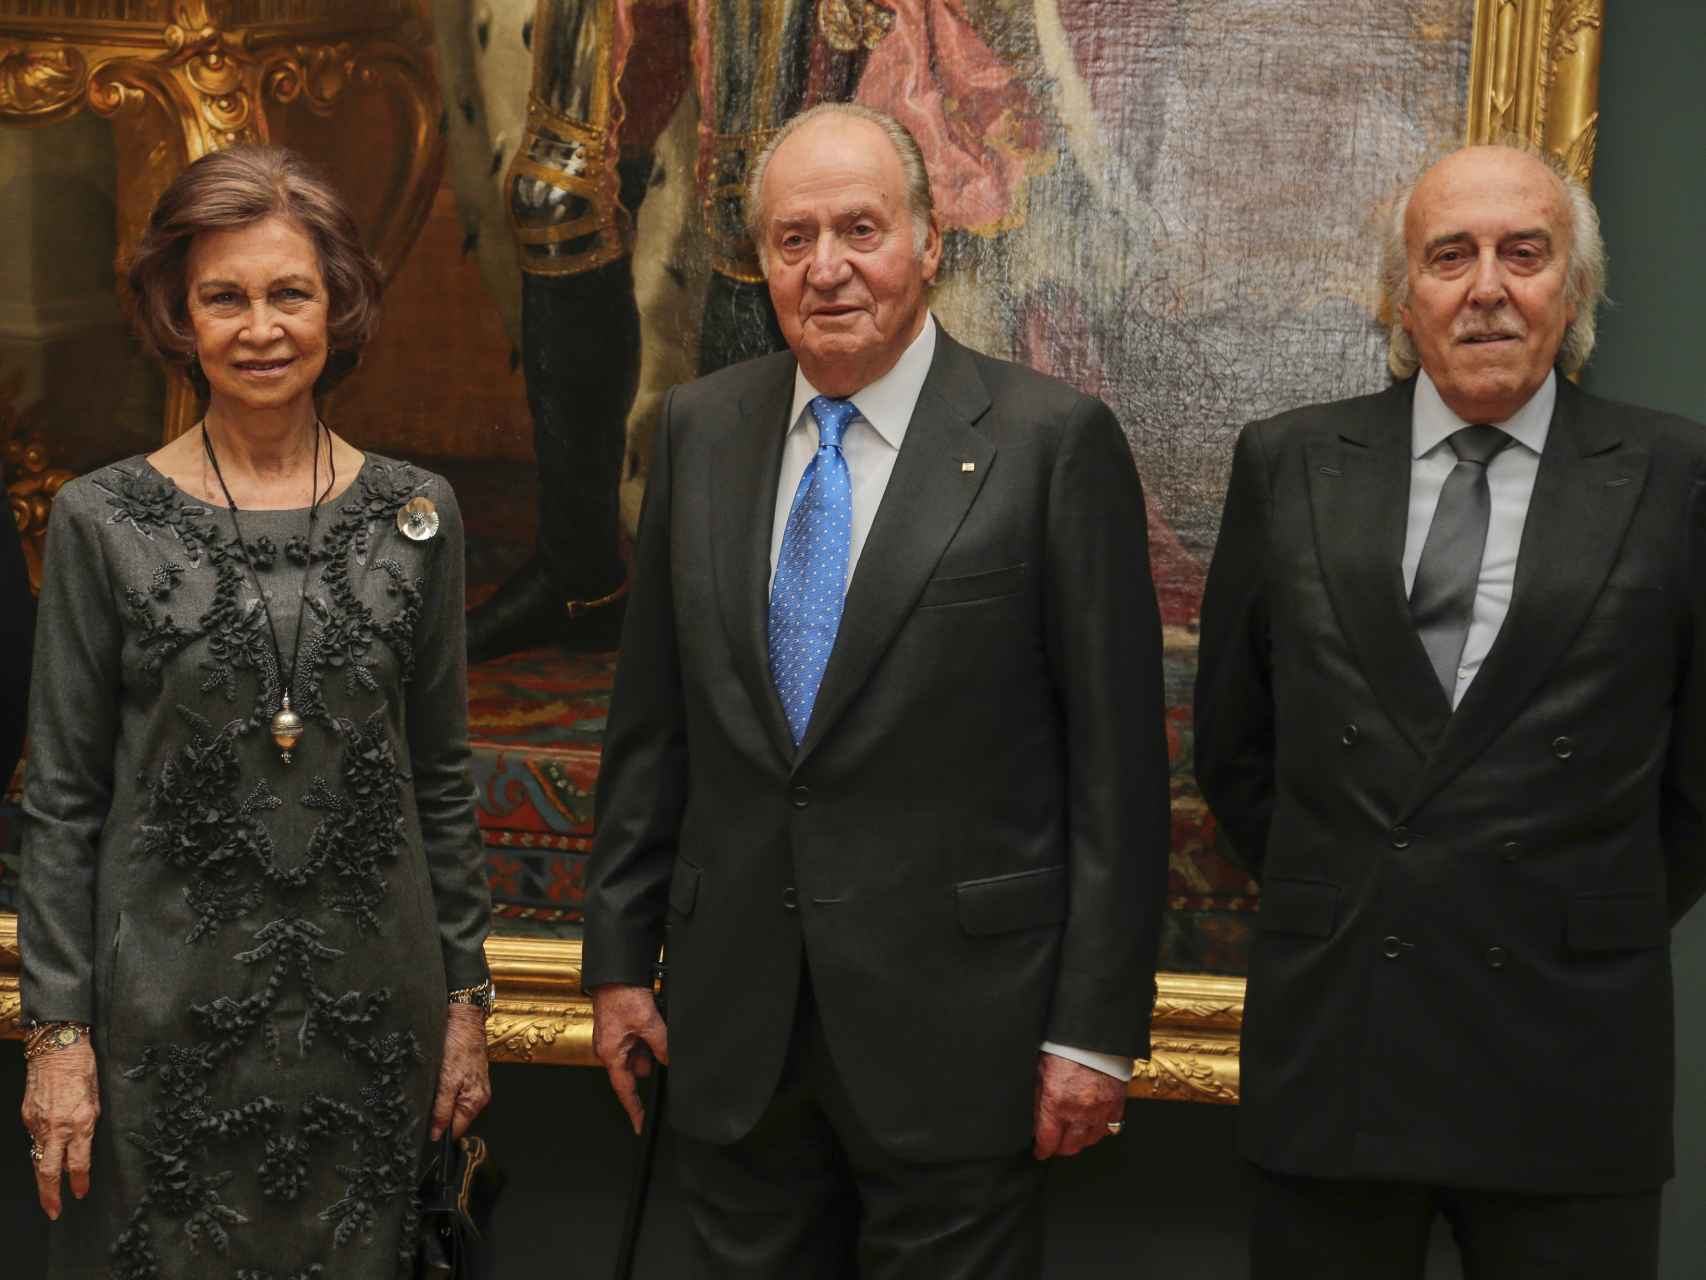 Doña Sofía y Don Juan Carlos han estado más distantes que en anteriores encuentros